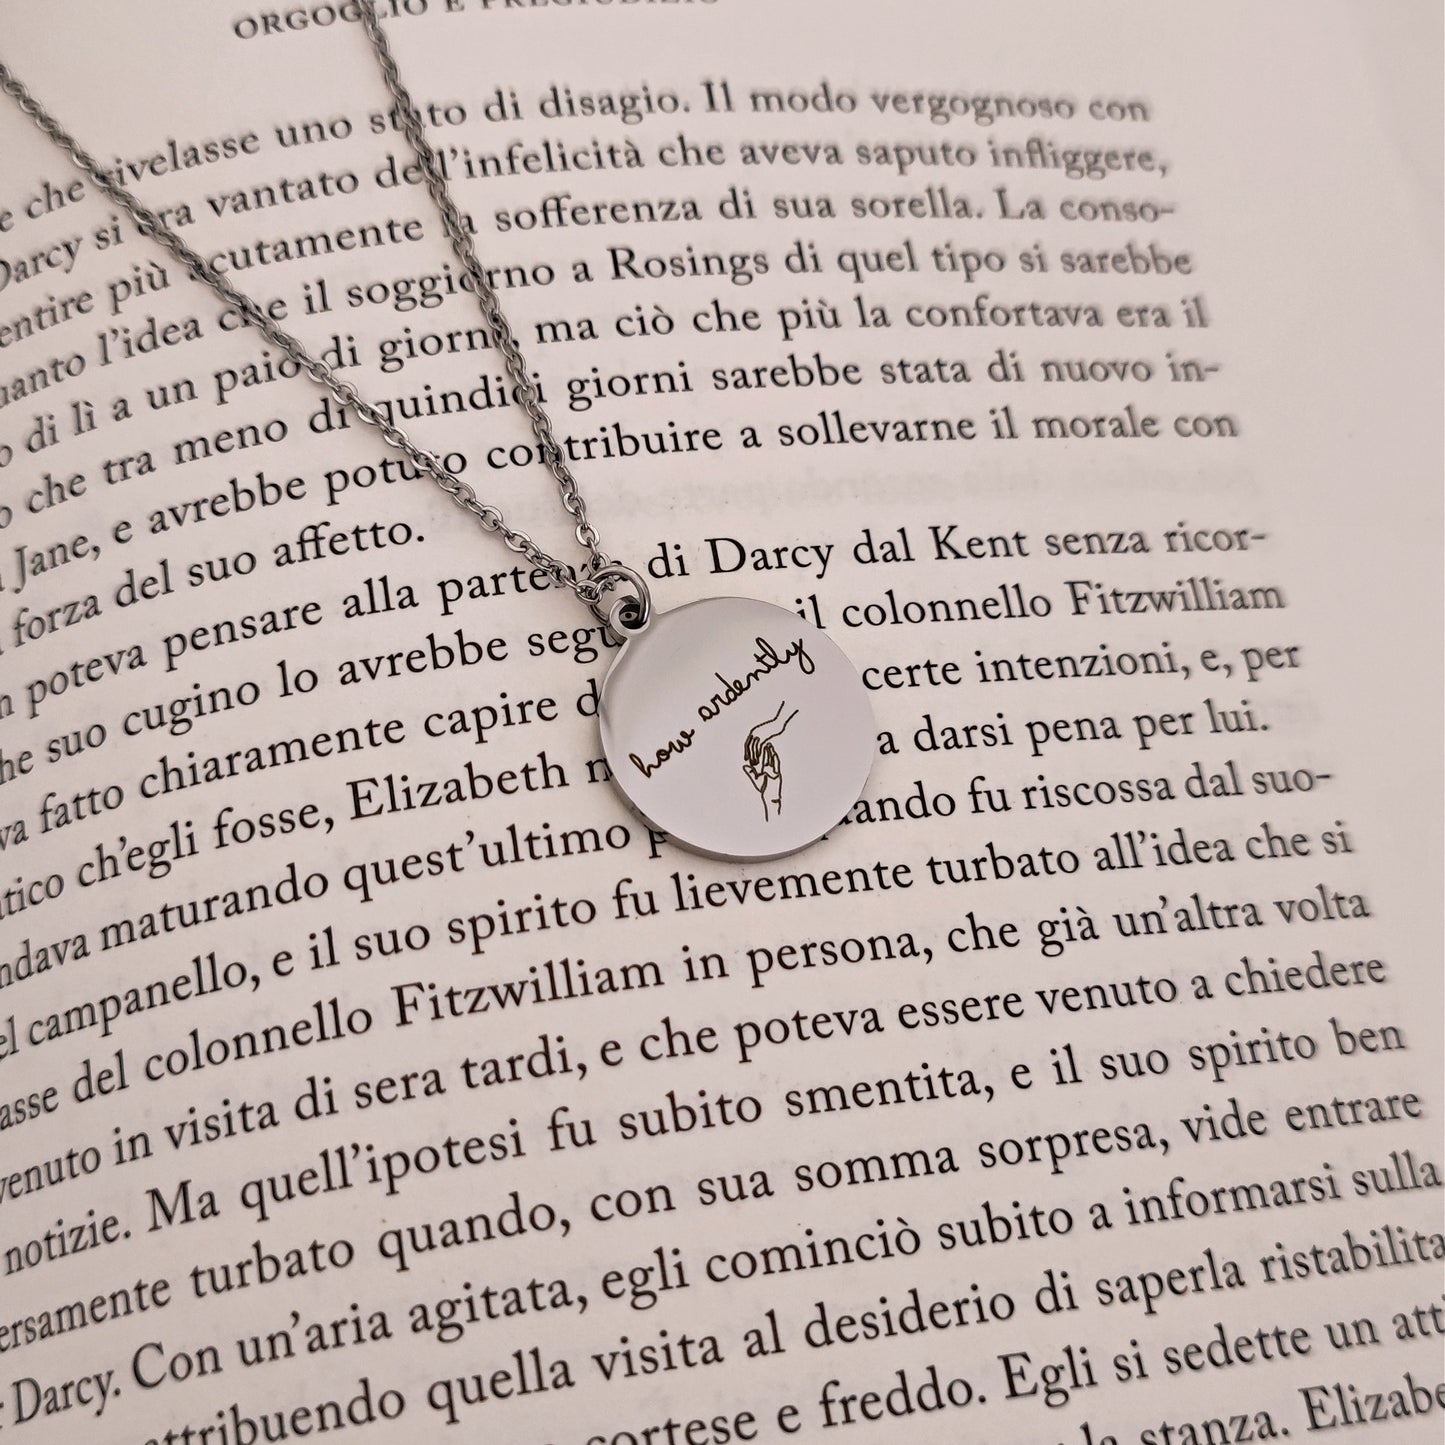 Collana "How Ardently" Orgoglio e Pregiudizio, Collana Bookish Mr. Darcy